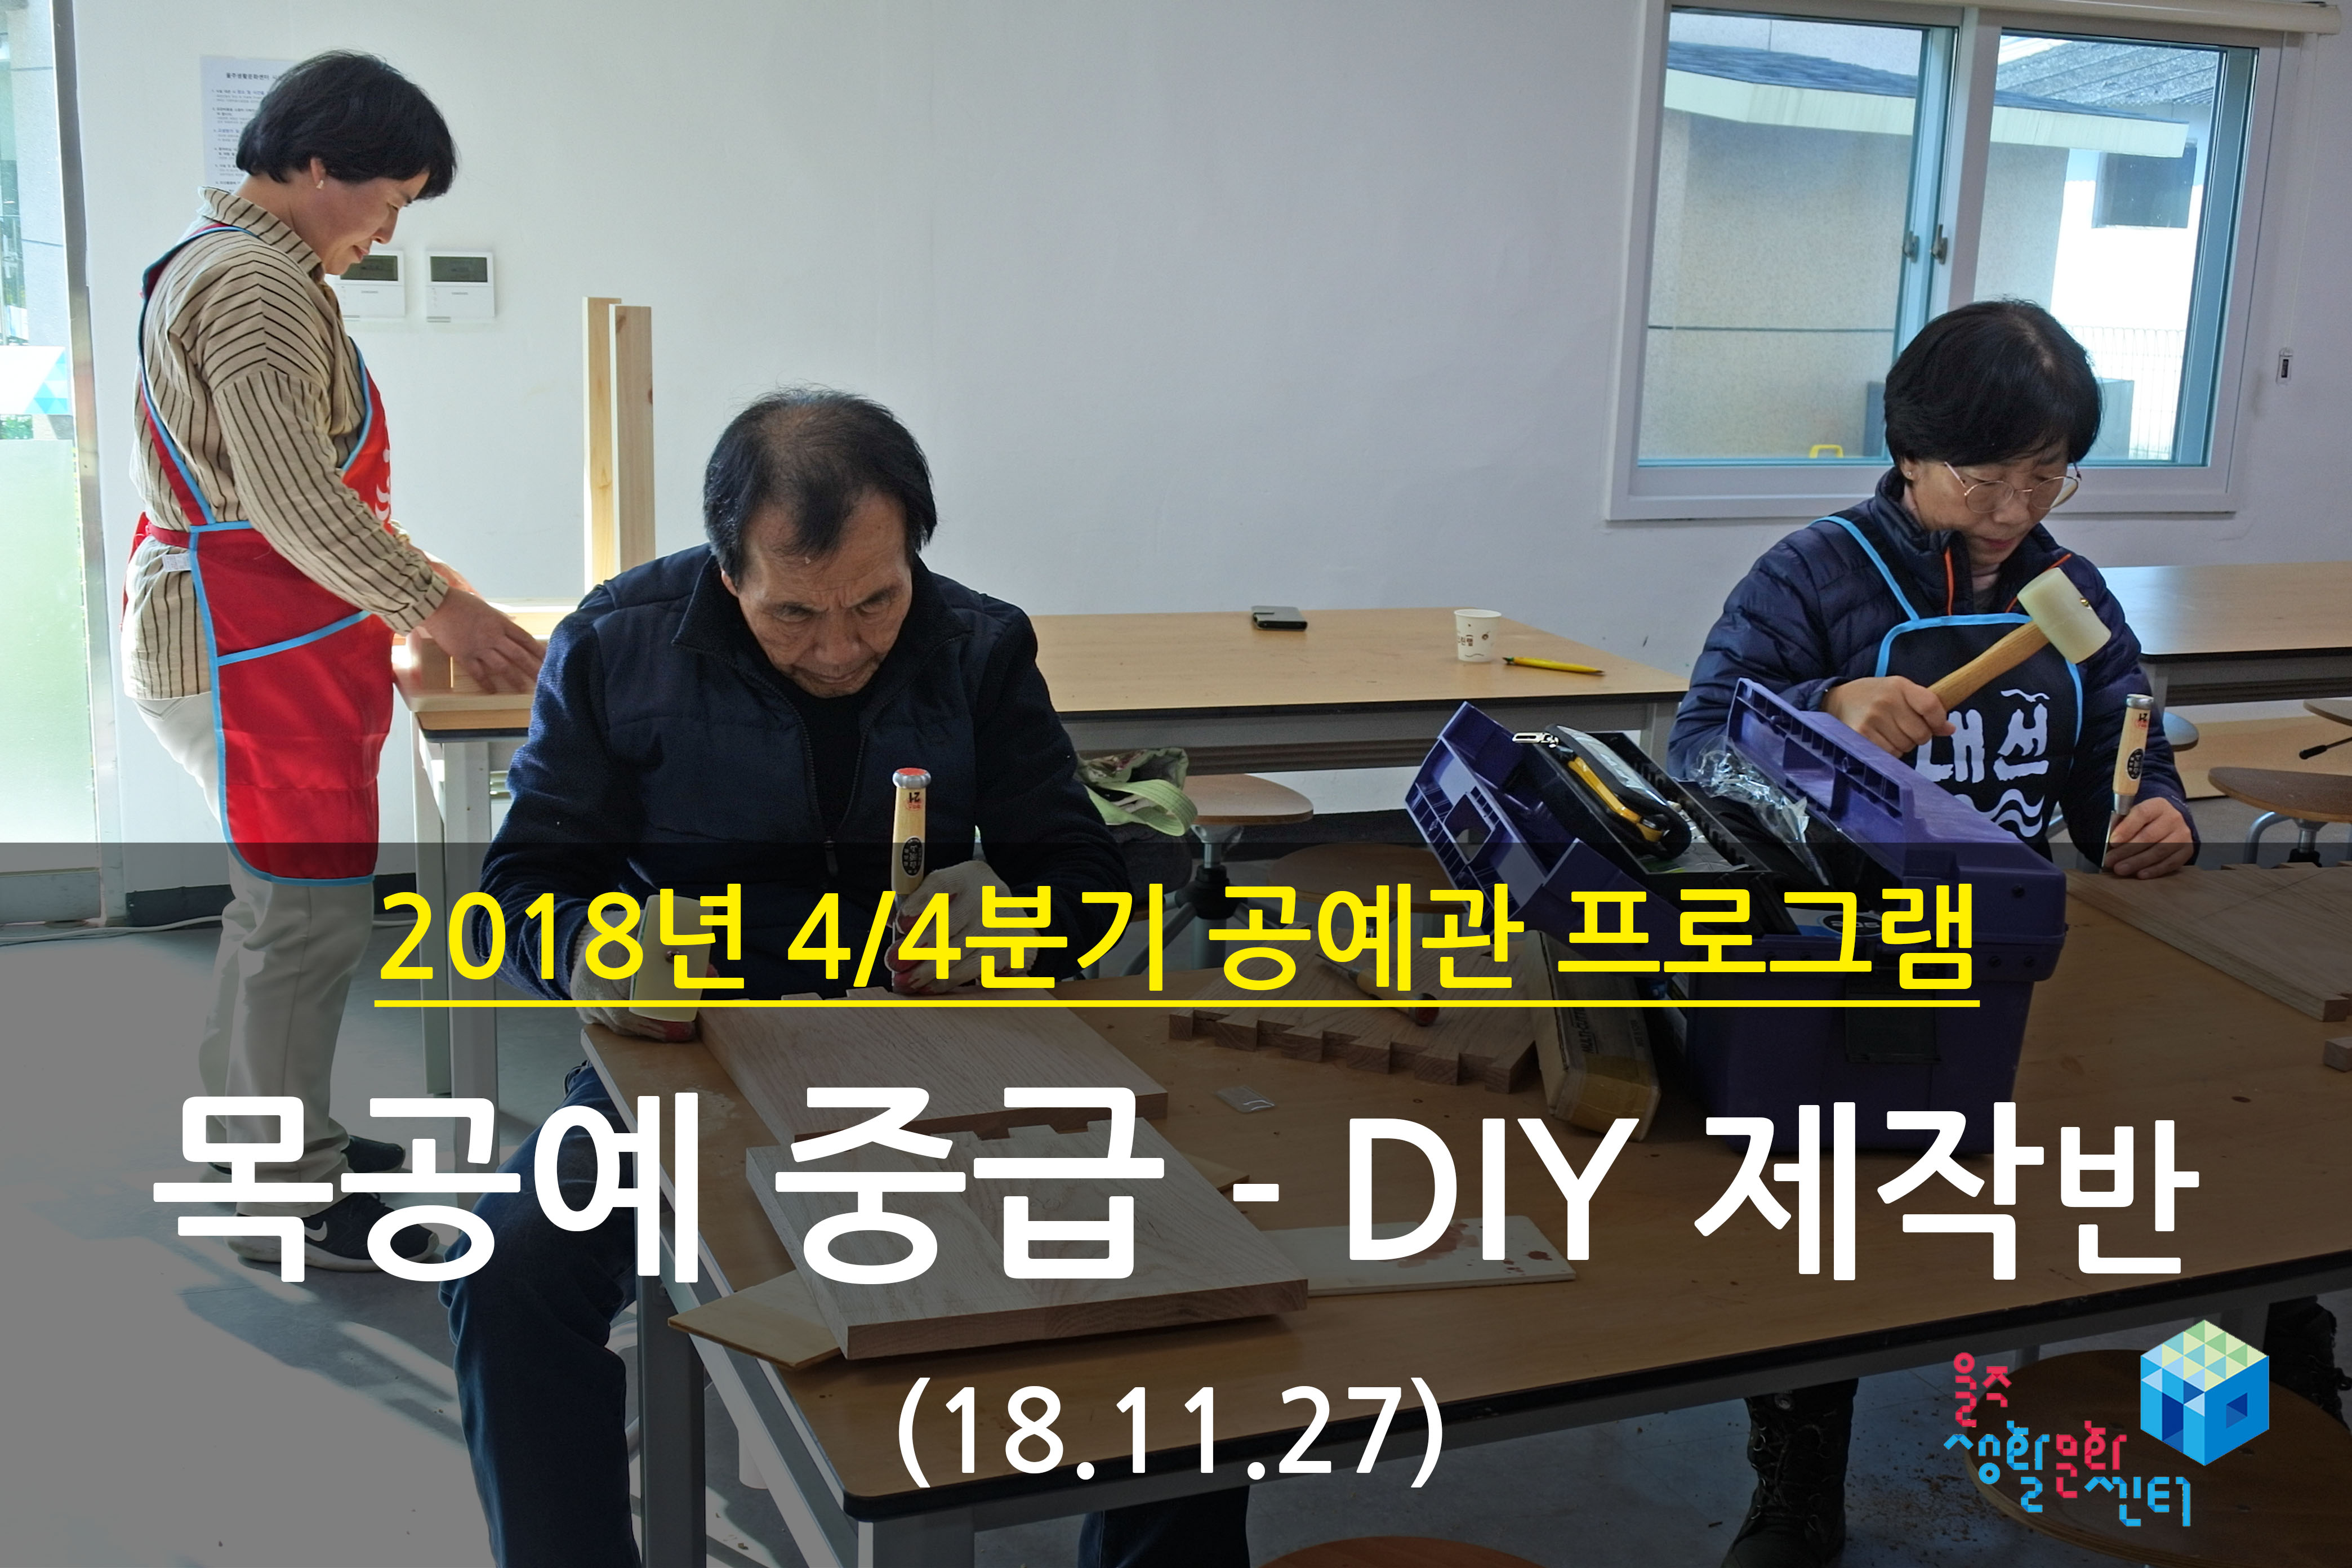 2018.11.27 _ 목공예 중급 - DIY 제작반 _ 4/4분기 8주차 수업